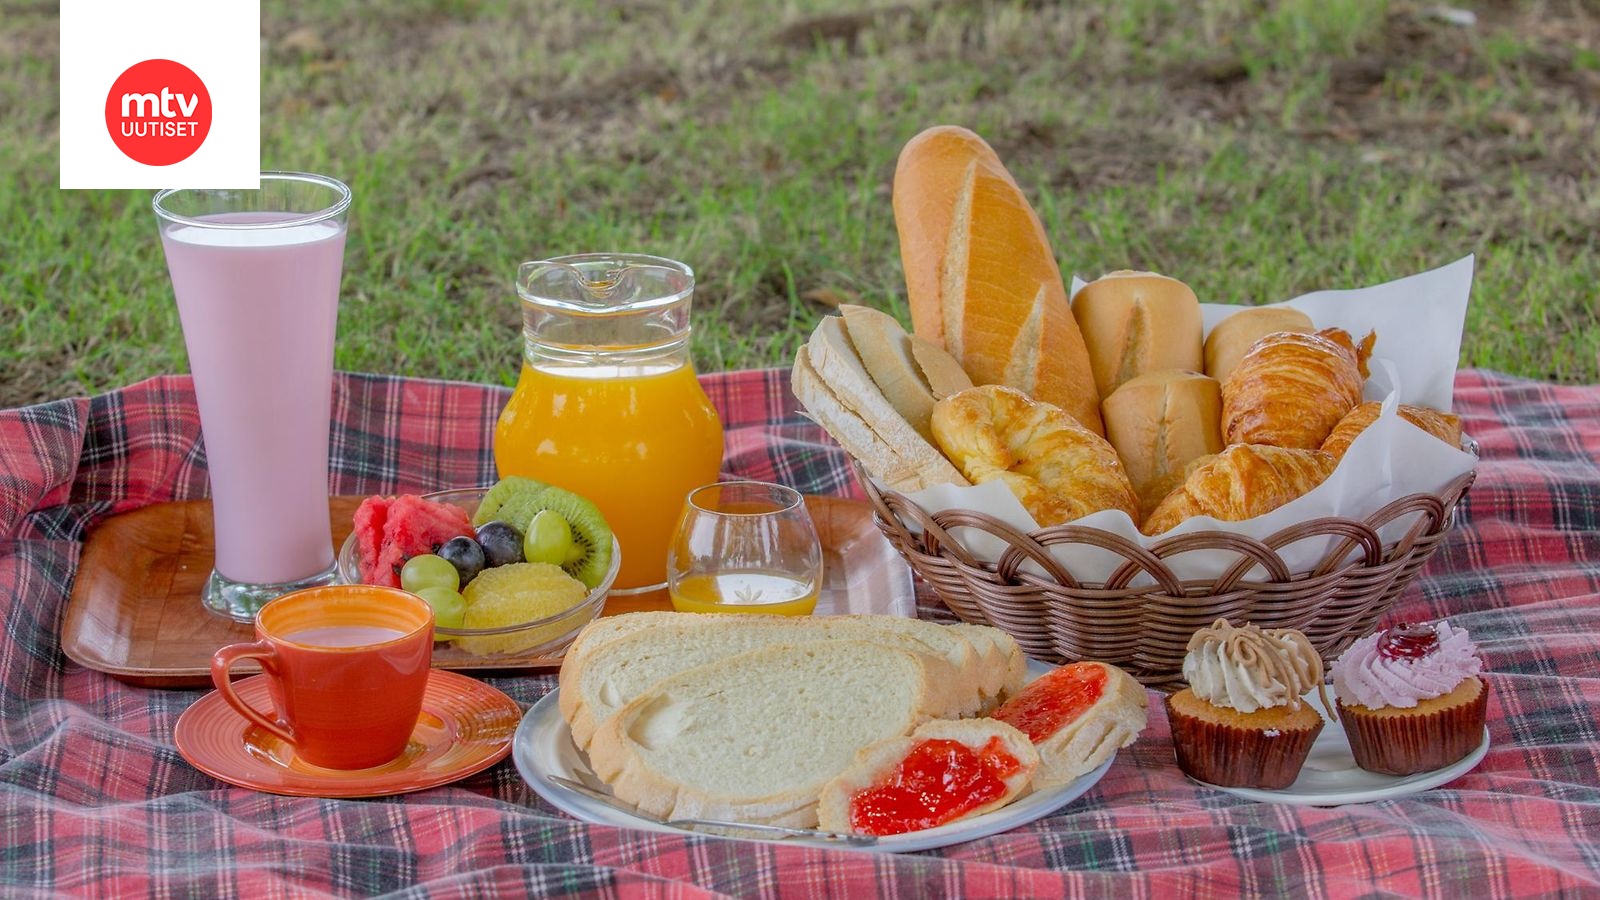 Suuntana piknik? Lue 8 parasta vinkkiä ja ruokaideaa eväsretkelle | Makuja  | MTV Uutiset